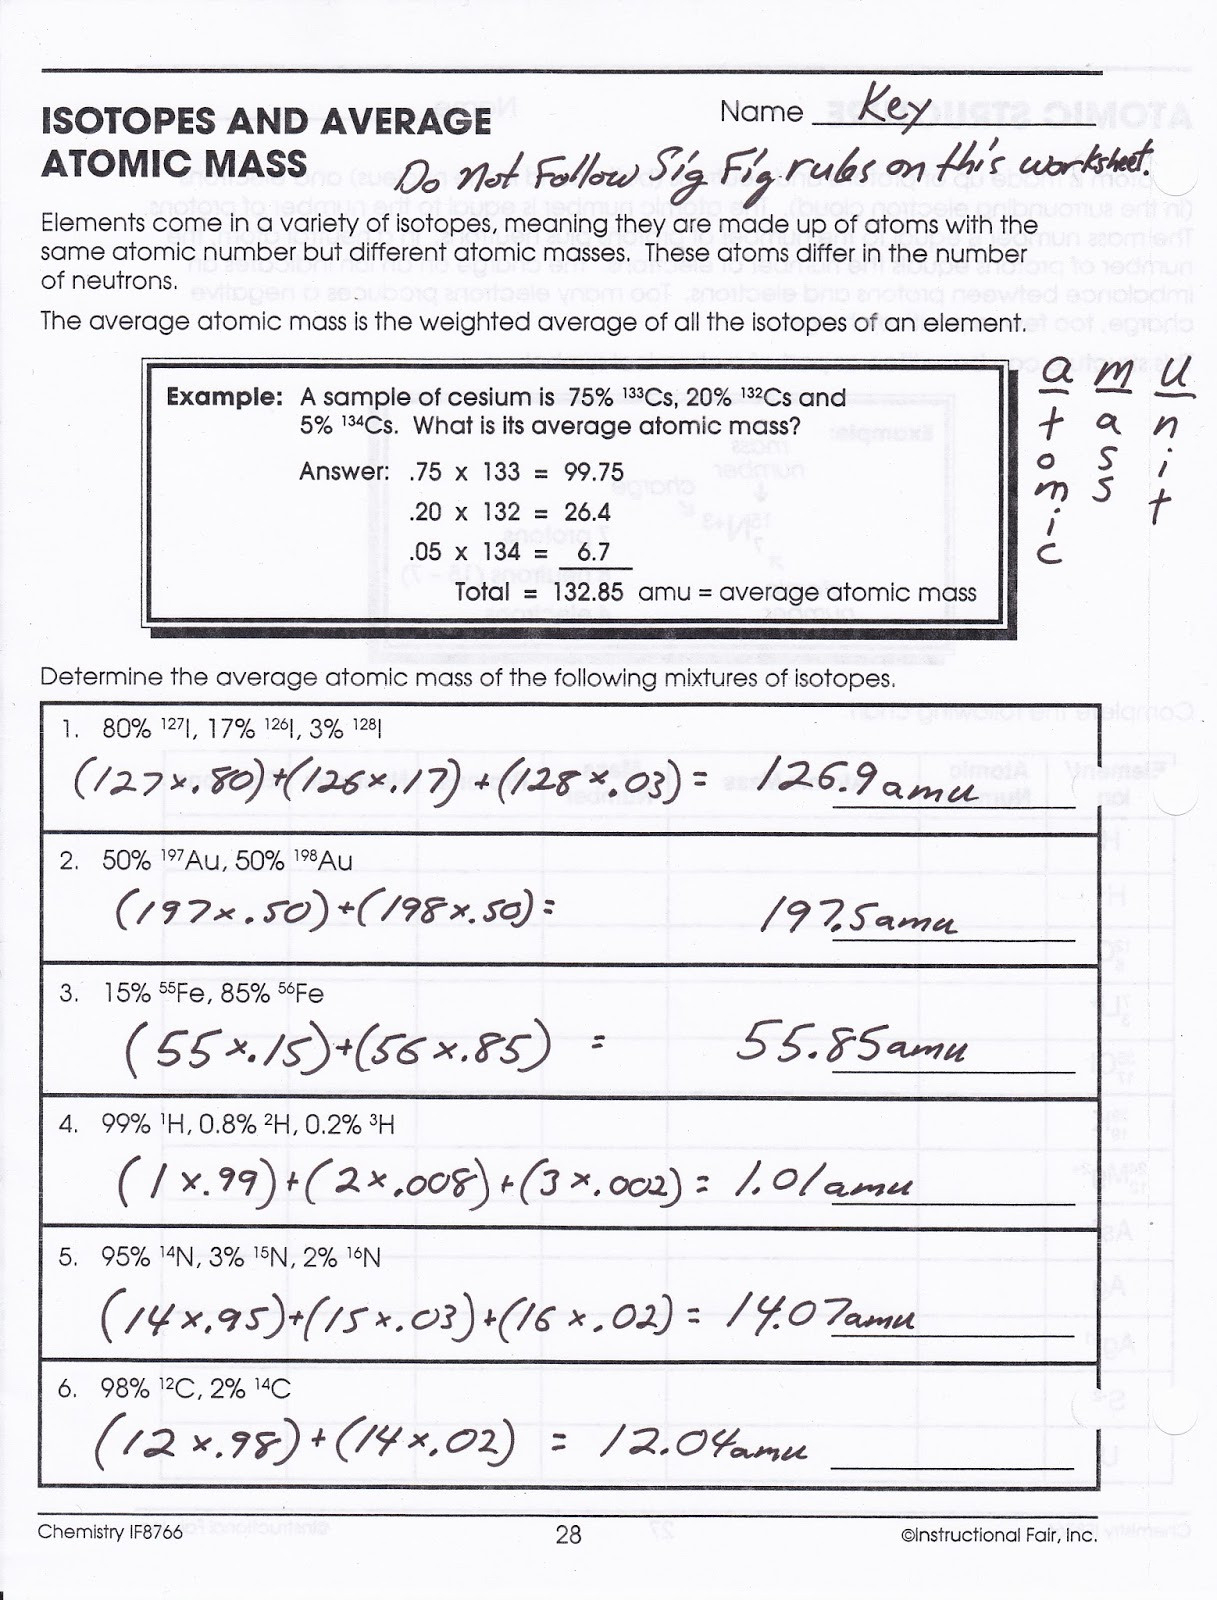 average atomic mass problems worksheet